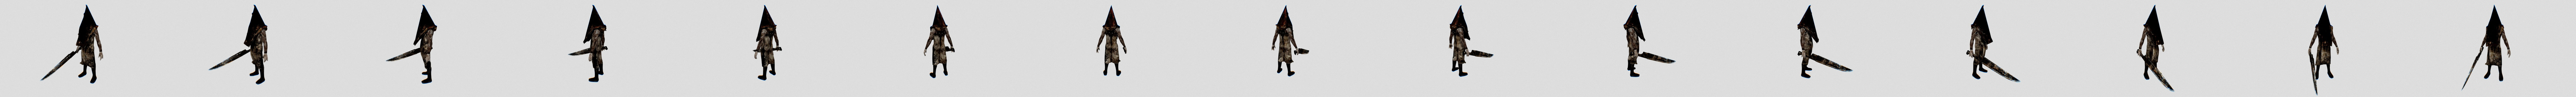 Silent Hill Pyramidhead Sword 3D Model $15 - .max .3ds .fbx .obj .unknown -  Free3D